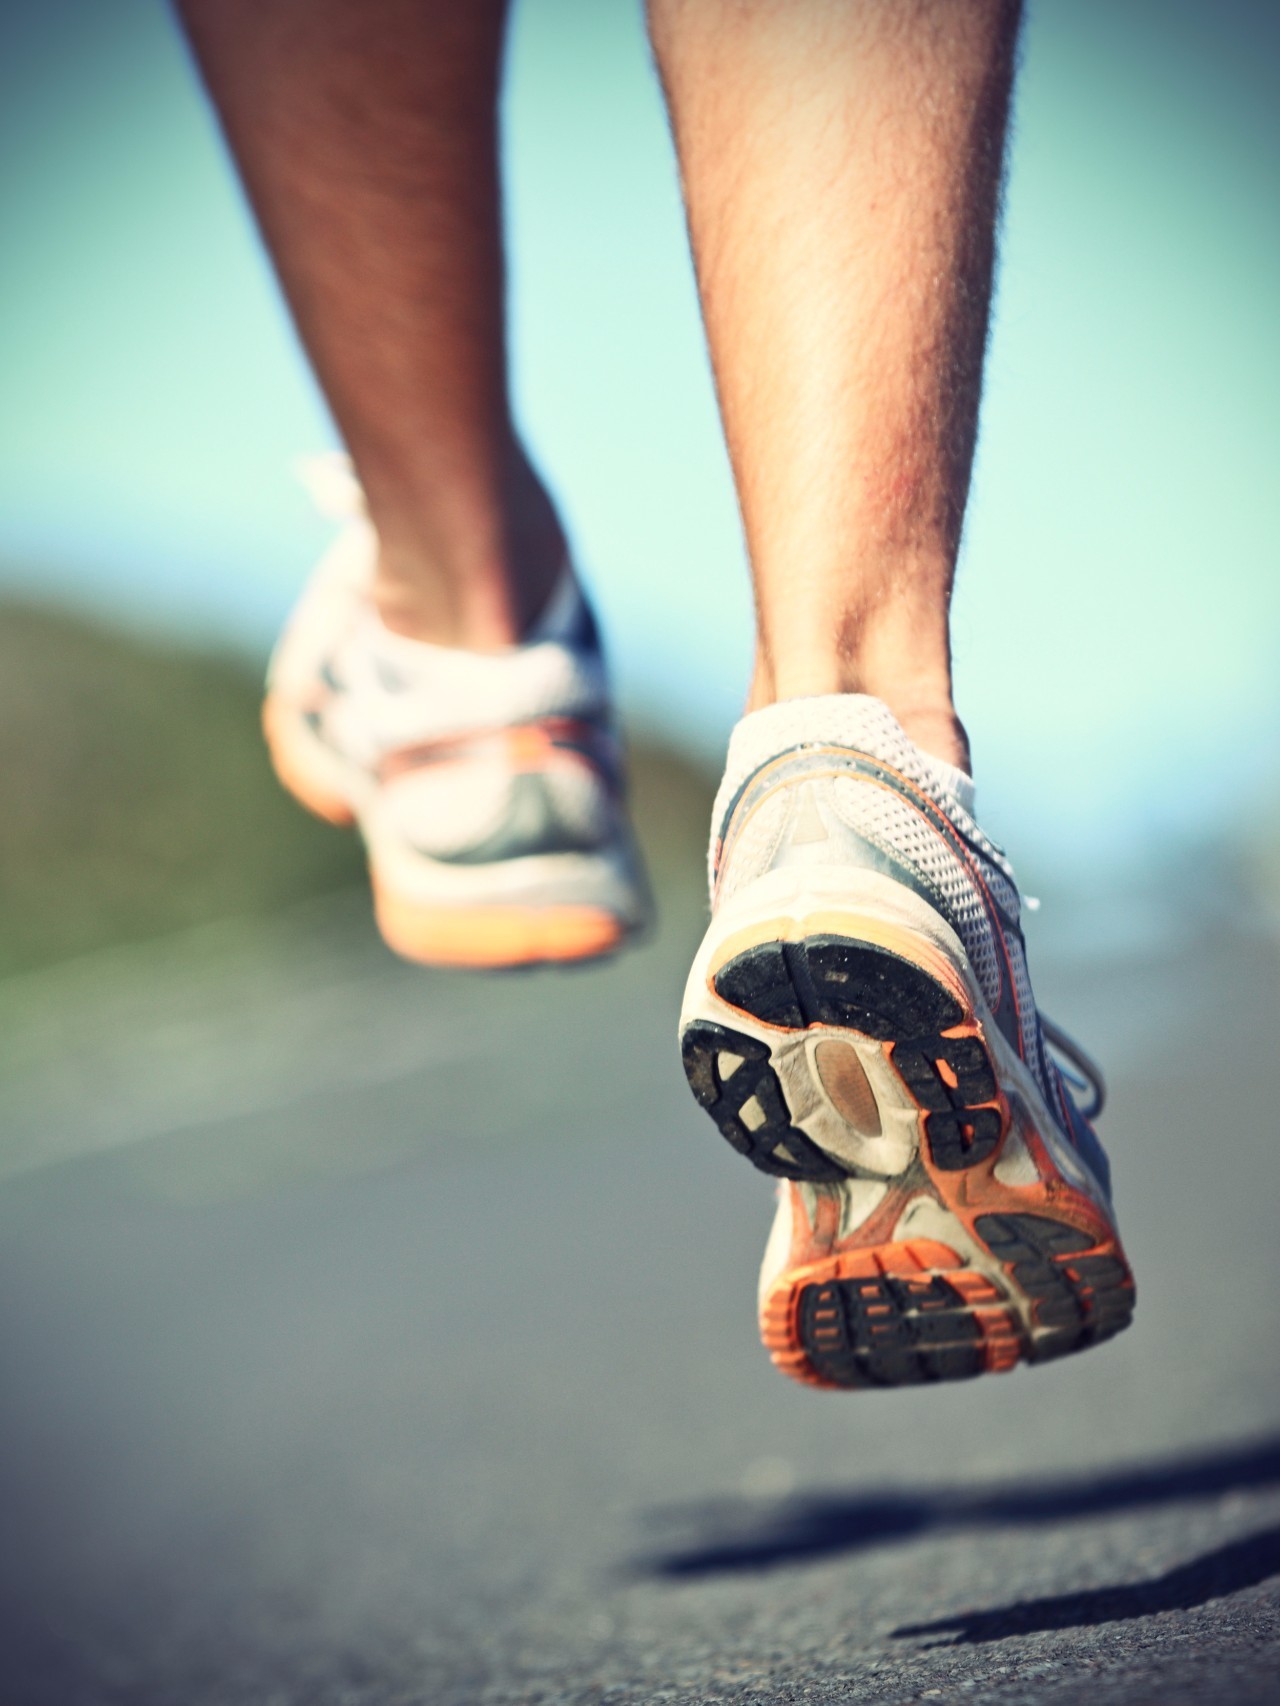 Get跑步的正确姿势，才能越跑越健康！_互联网_艾瑞网